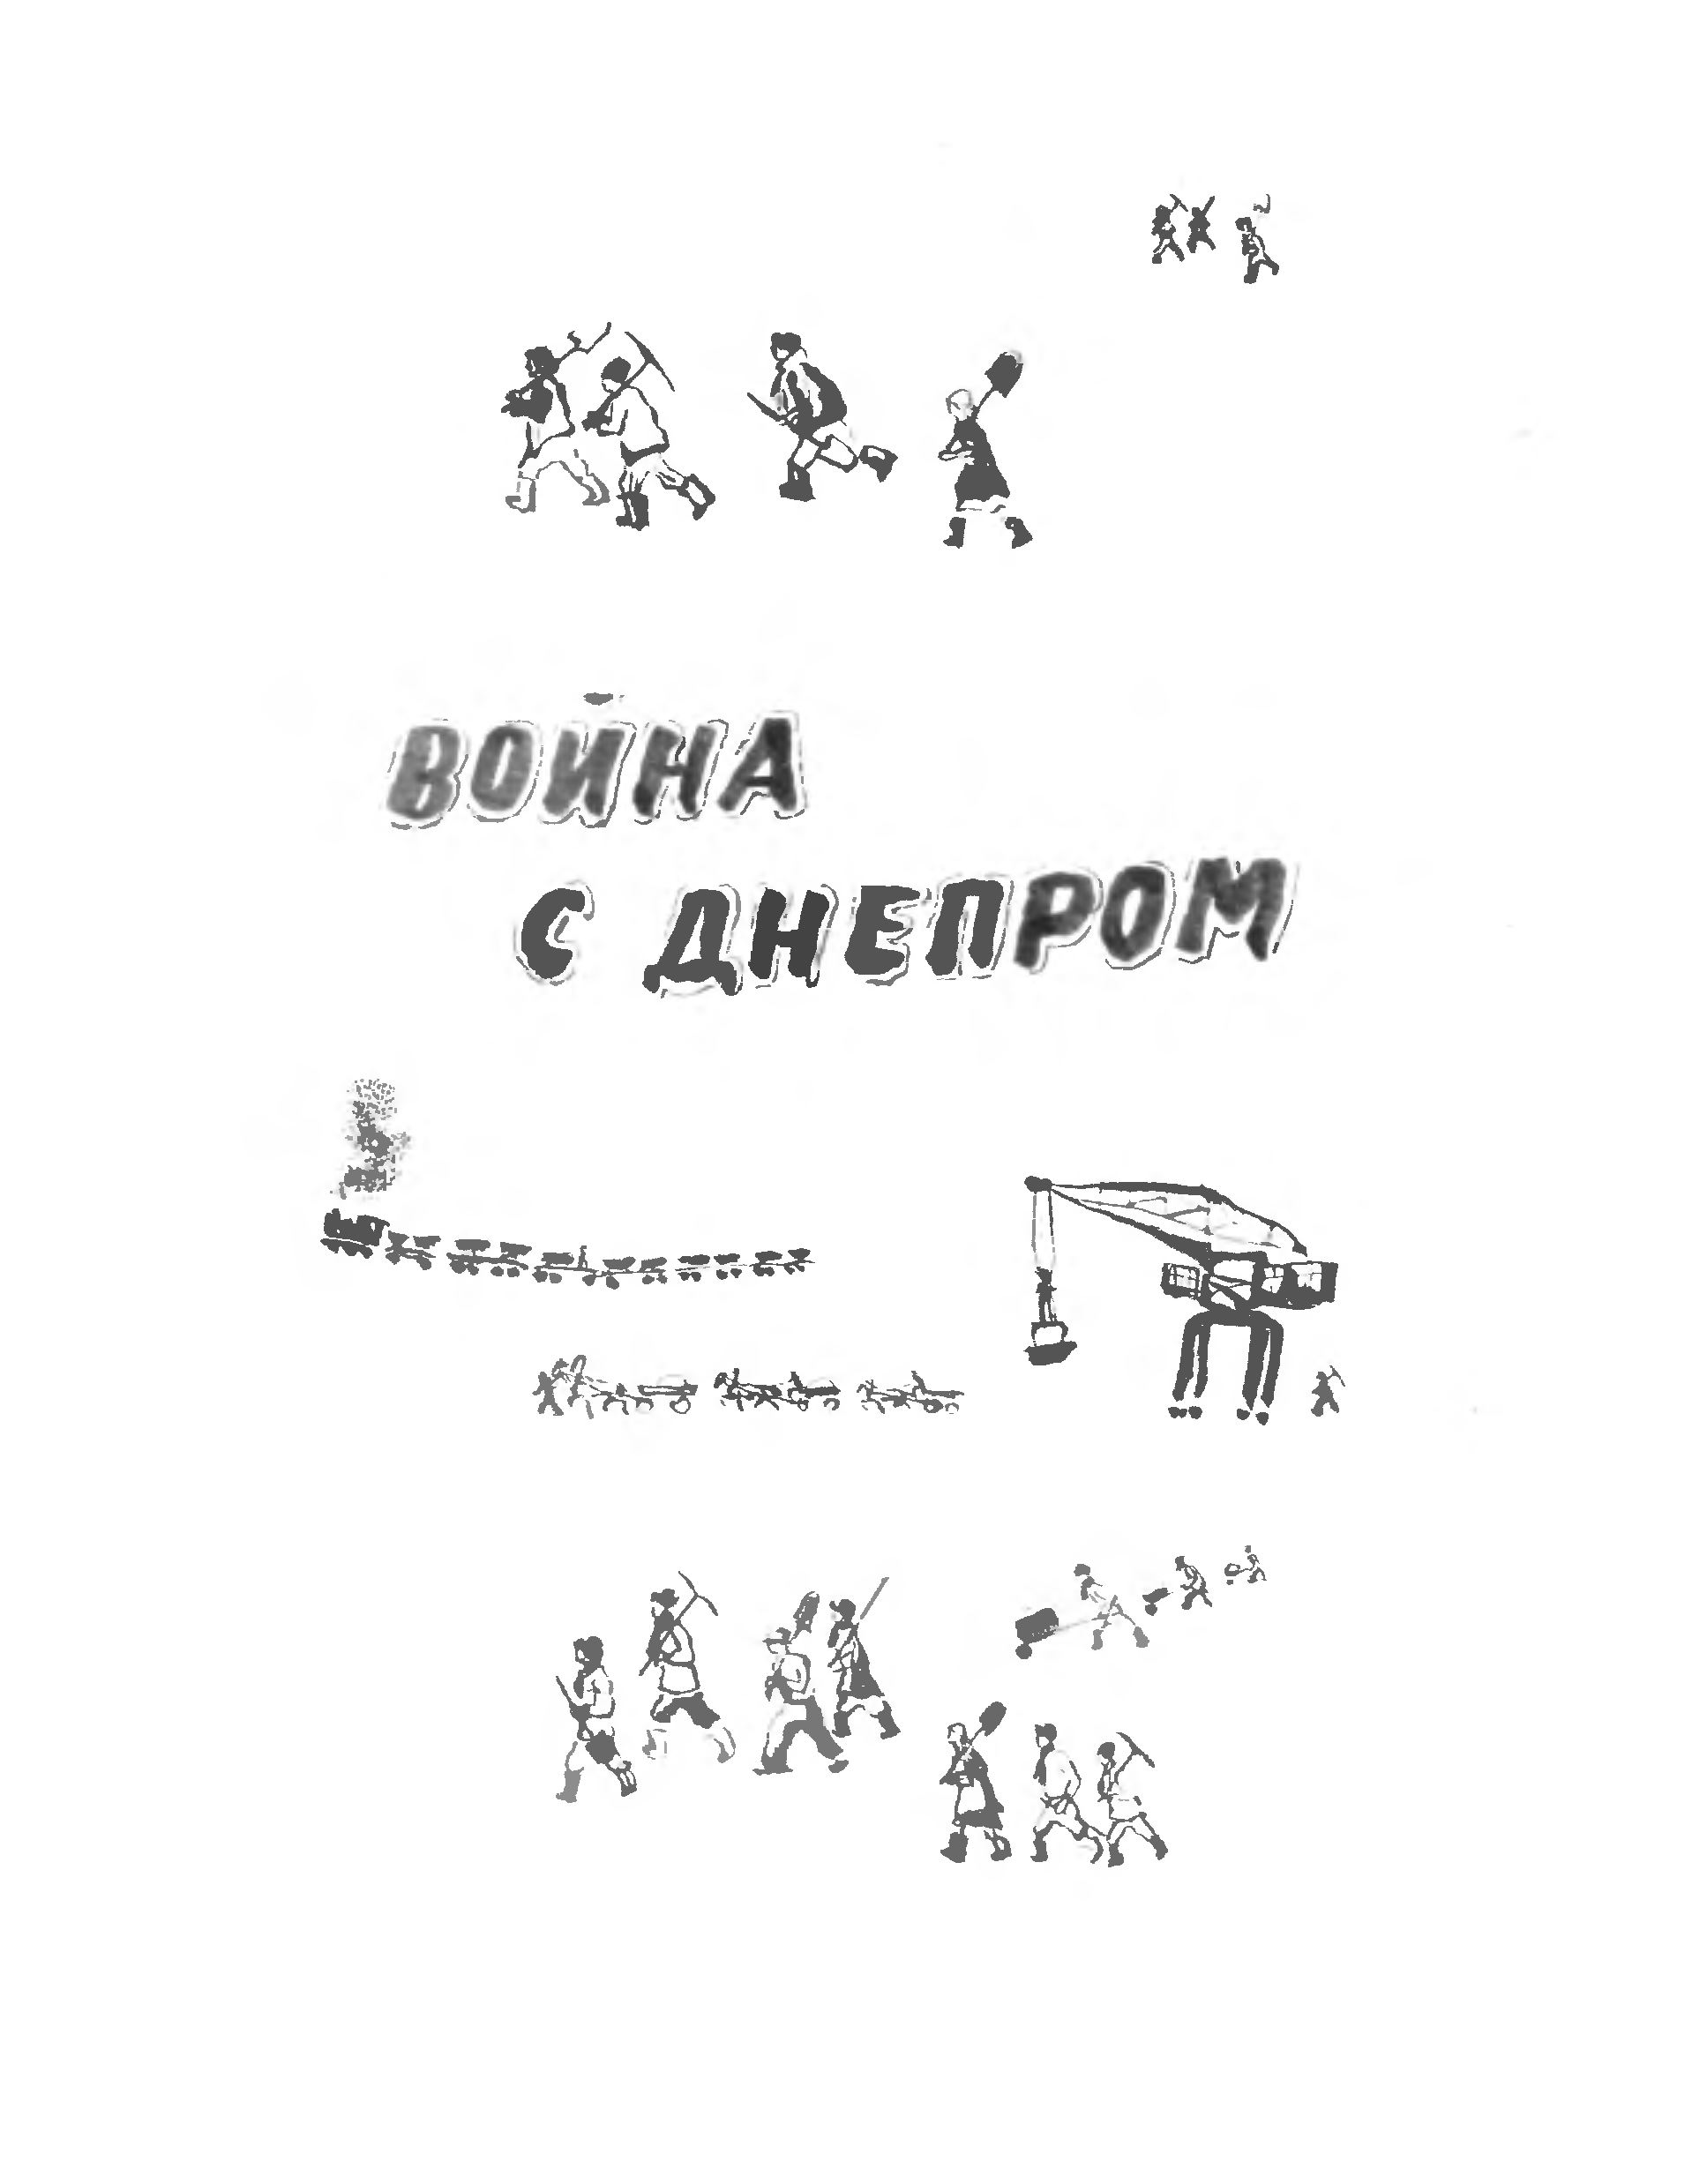 Сказки, песни, загадки / С. Маршак ; Рисунки В. Лебедева. — Москва : Детская литература, 1973.